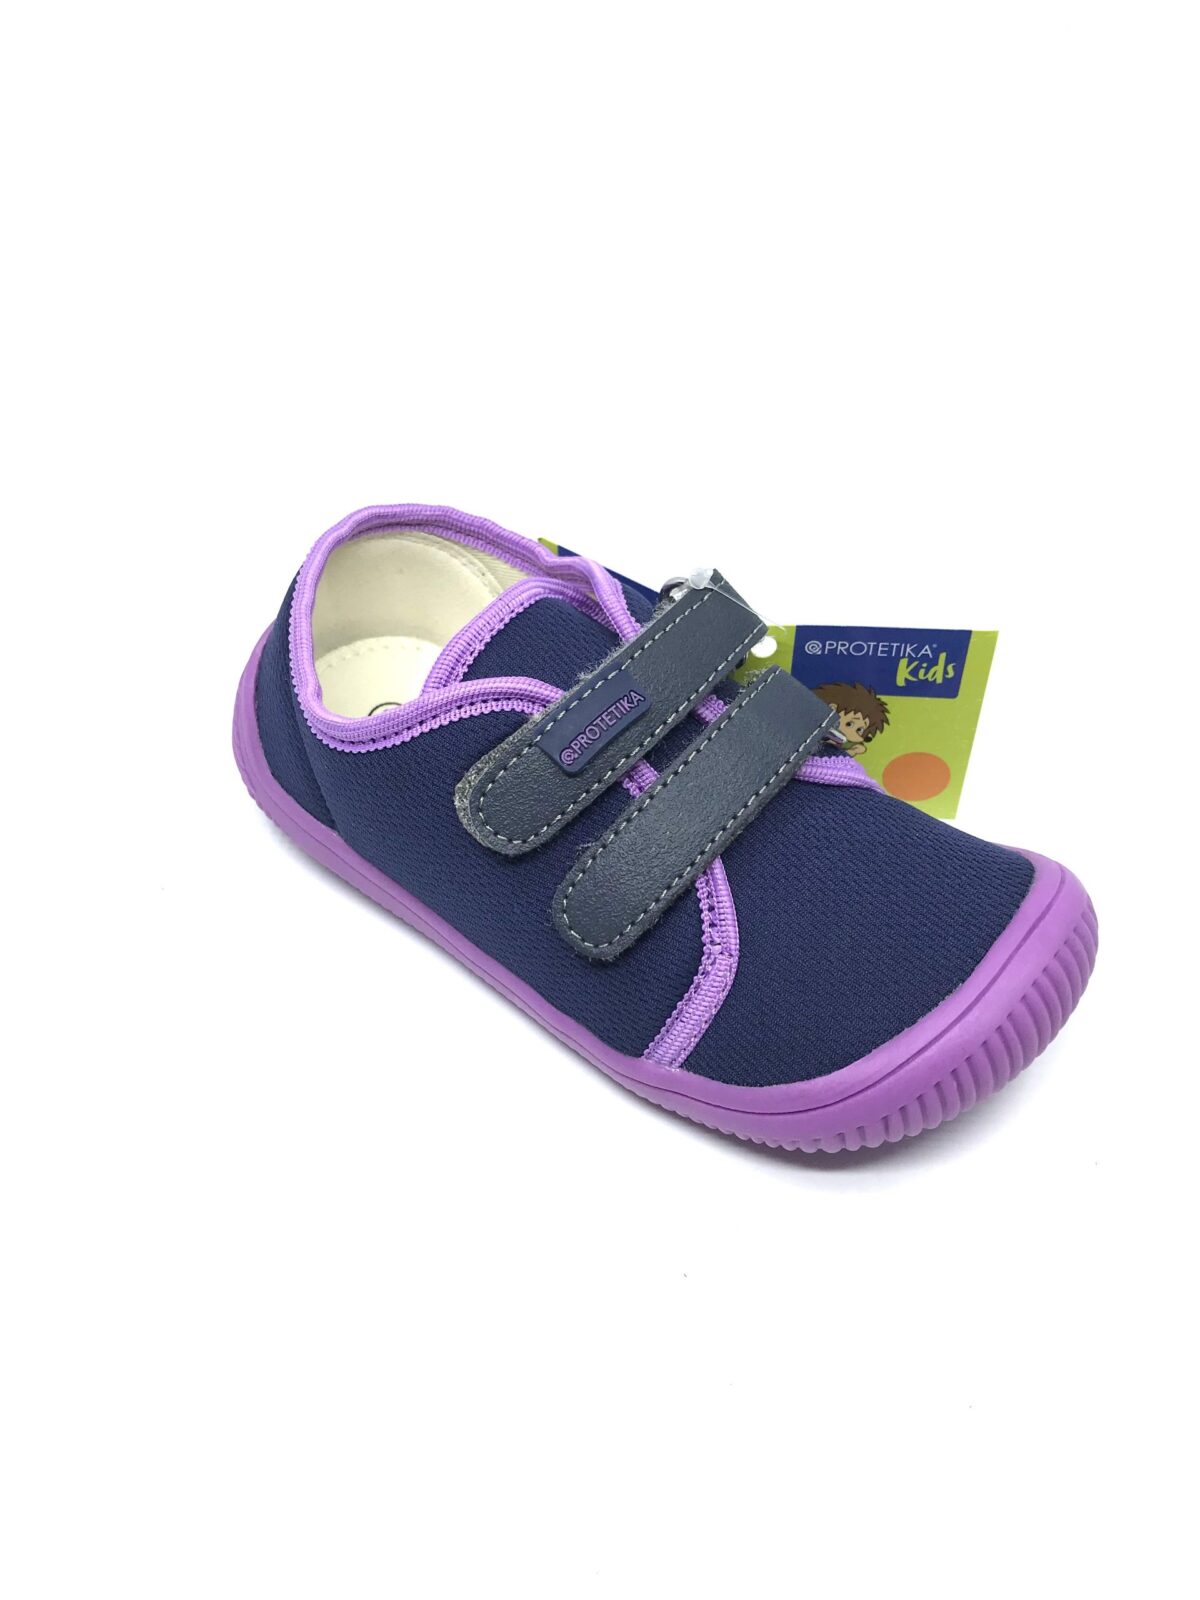 Protetika Alix, Lila Laste barefoot jalatsid - HellyK - Kvaliteetsed lasteriided, villariided, barefoot jalatsid